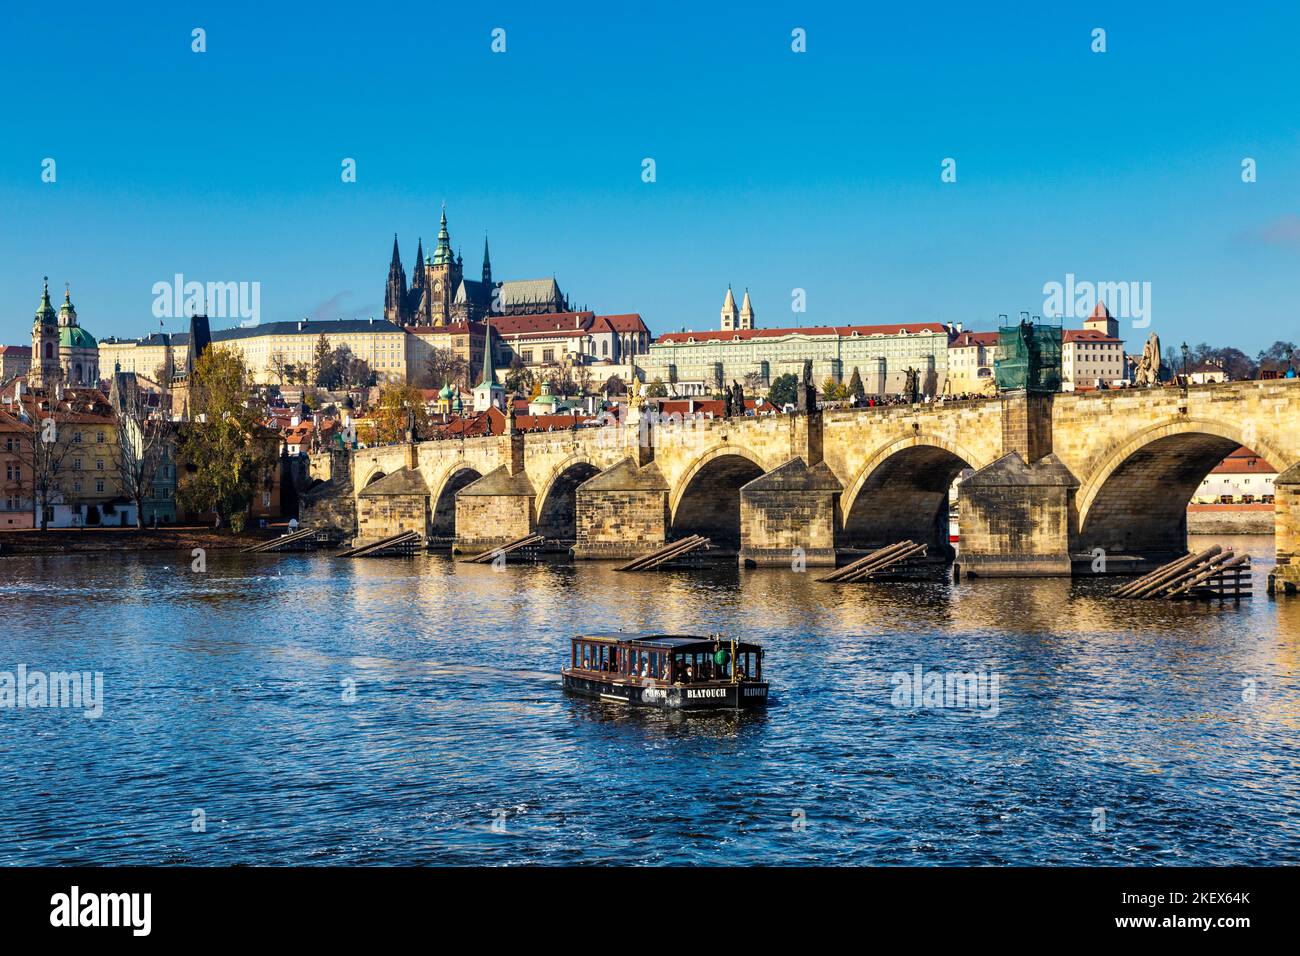 Vue sur le château de Prague, la cathédrale Saint-Vitus et le pont Charles, Prague, République tchèque Banque D'Images